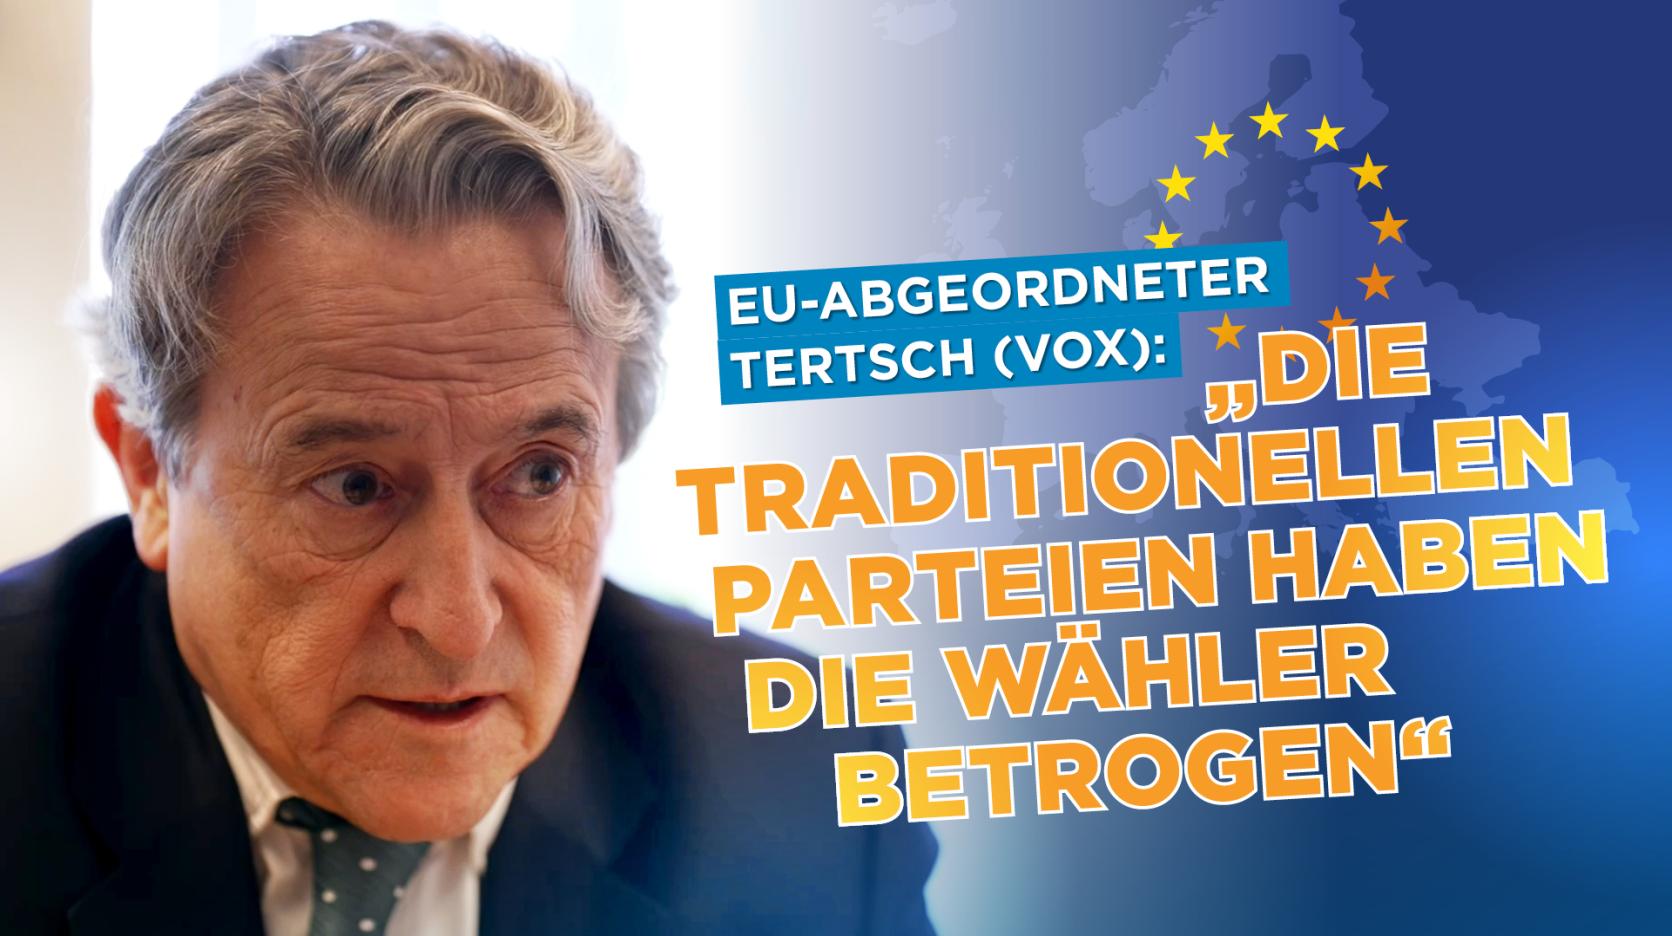 ⁣EU-Abgeordneter Tertsch (VOX): „Die traditionellen konservativen Parteien haben die Wählerschaft bet